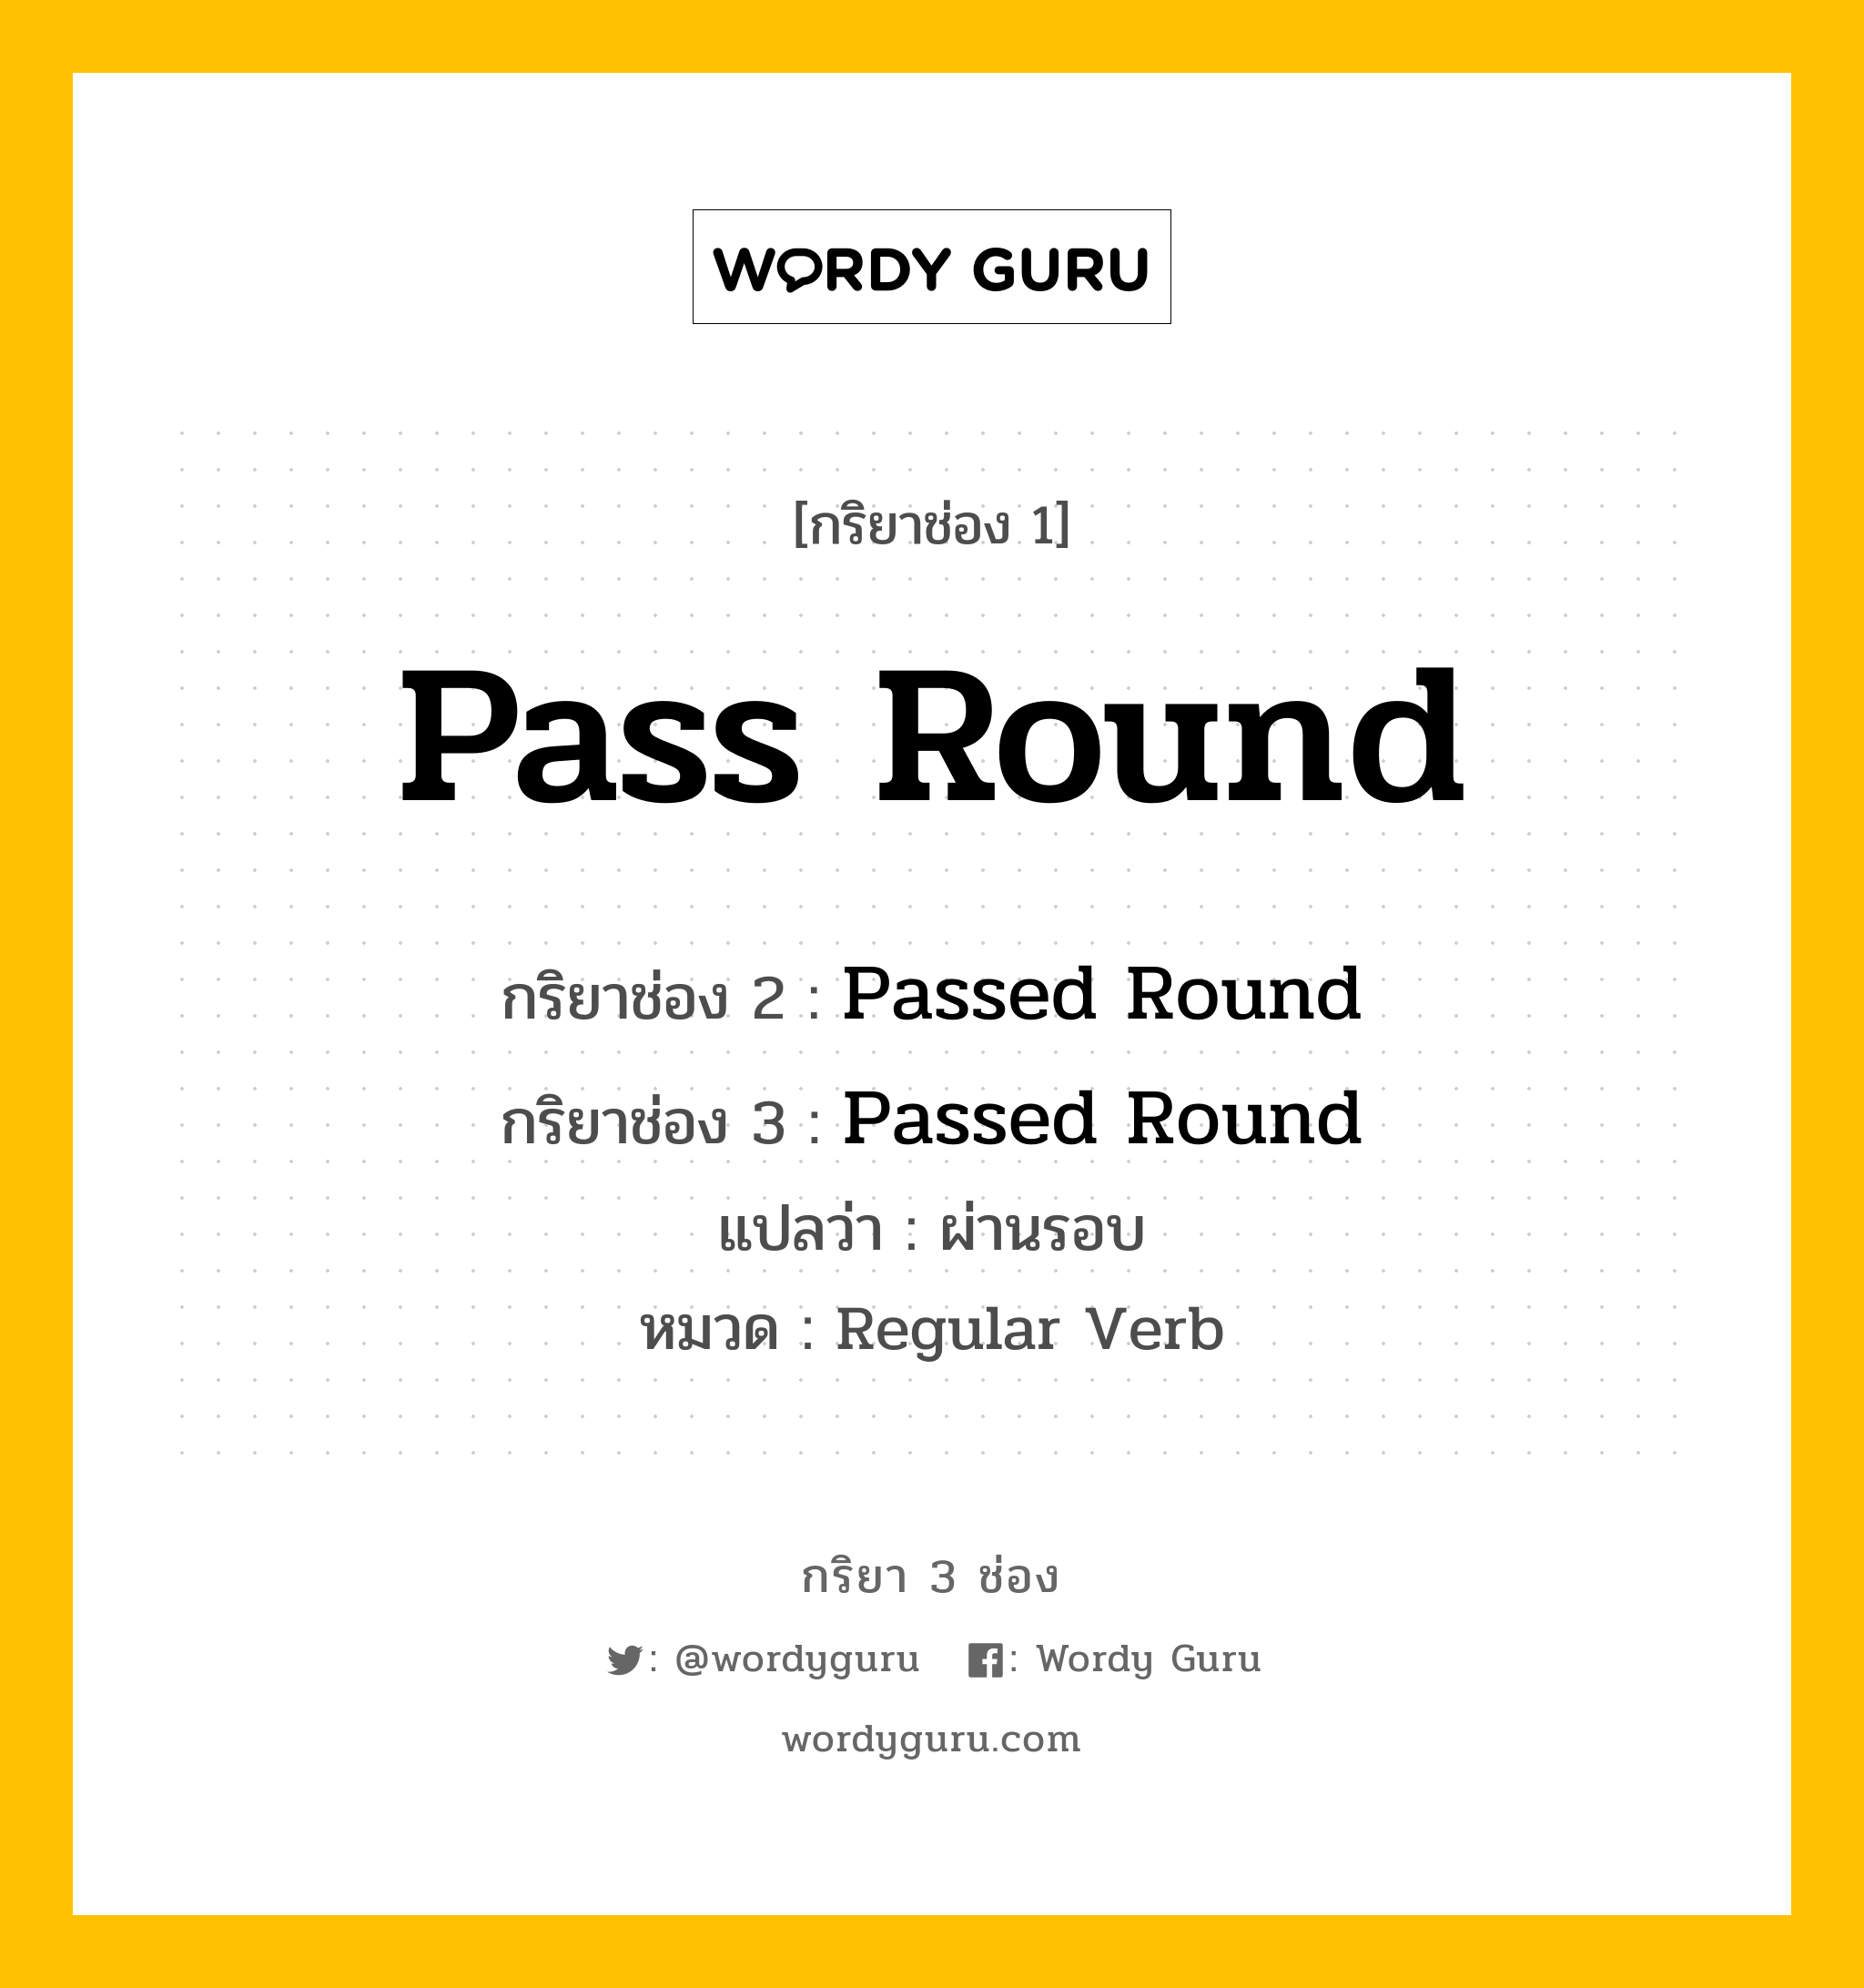 กริยา 3 ช่อง ของ Pass Round คืออะไร?, กริยาช่อง 1 Pass Round กริยาช่อง 2 Passed Round กริยาช่อง 3 Passed Round แปลว่า ผ่านรอบ หมวด Regular Verb หมวด Regular Verb